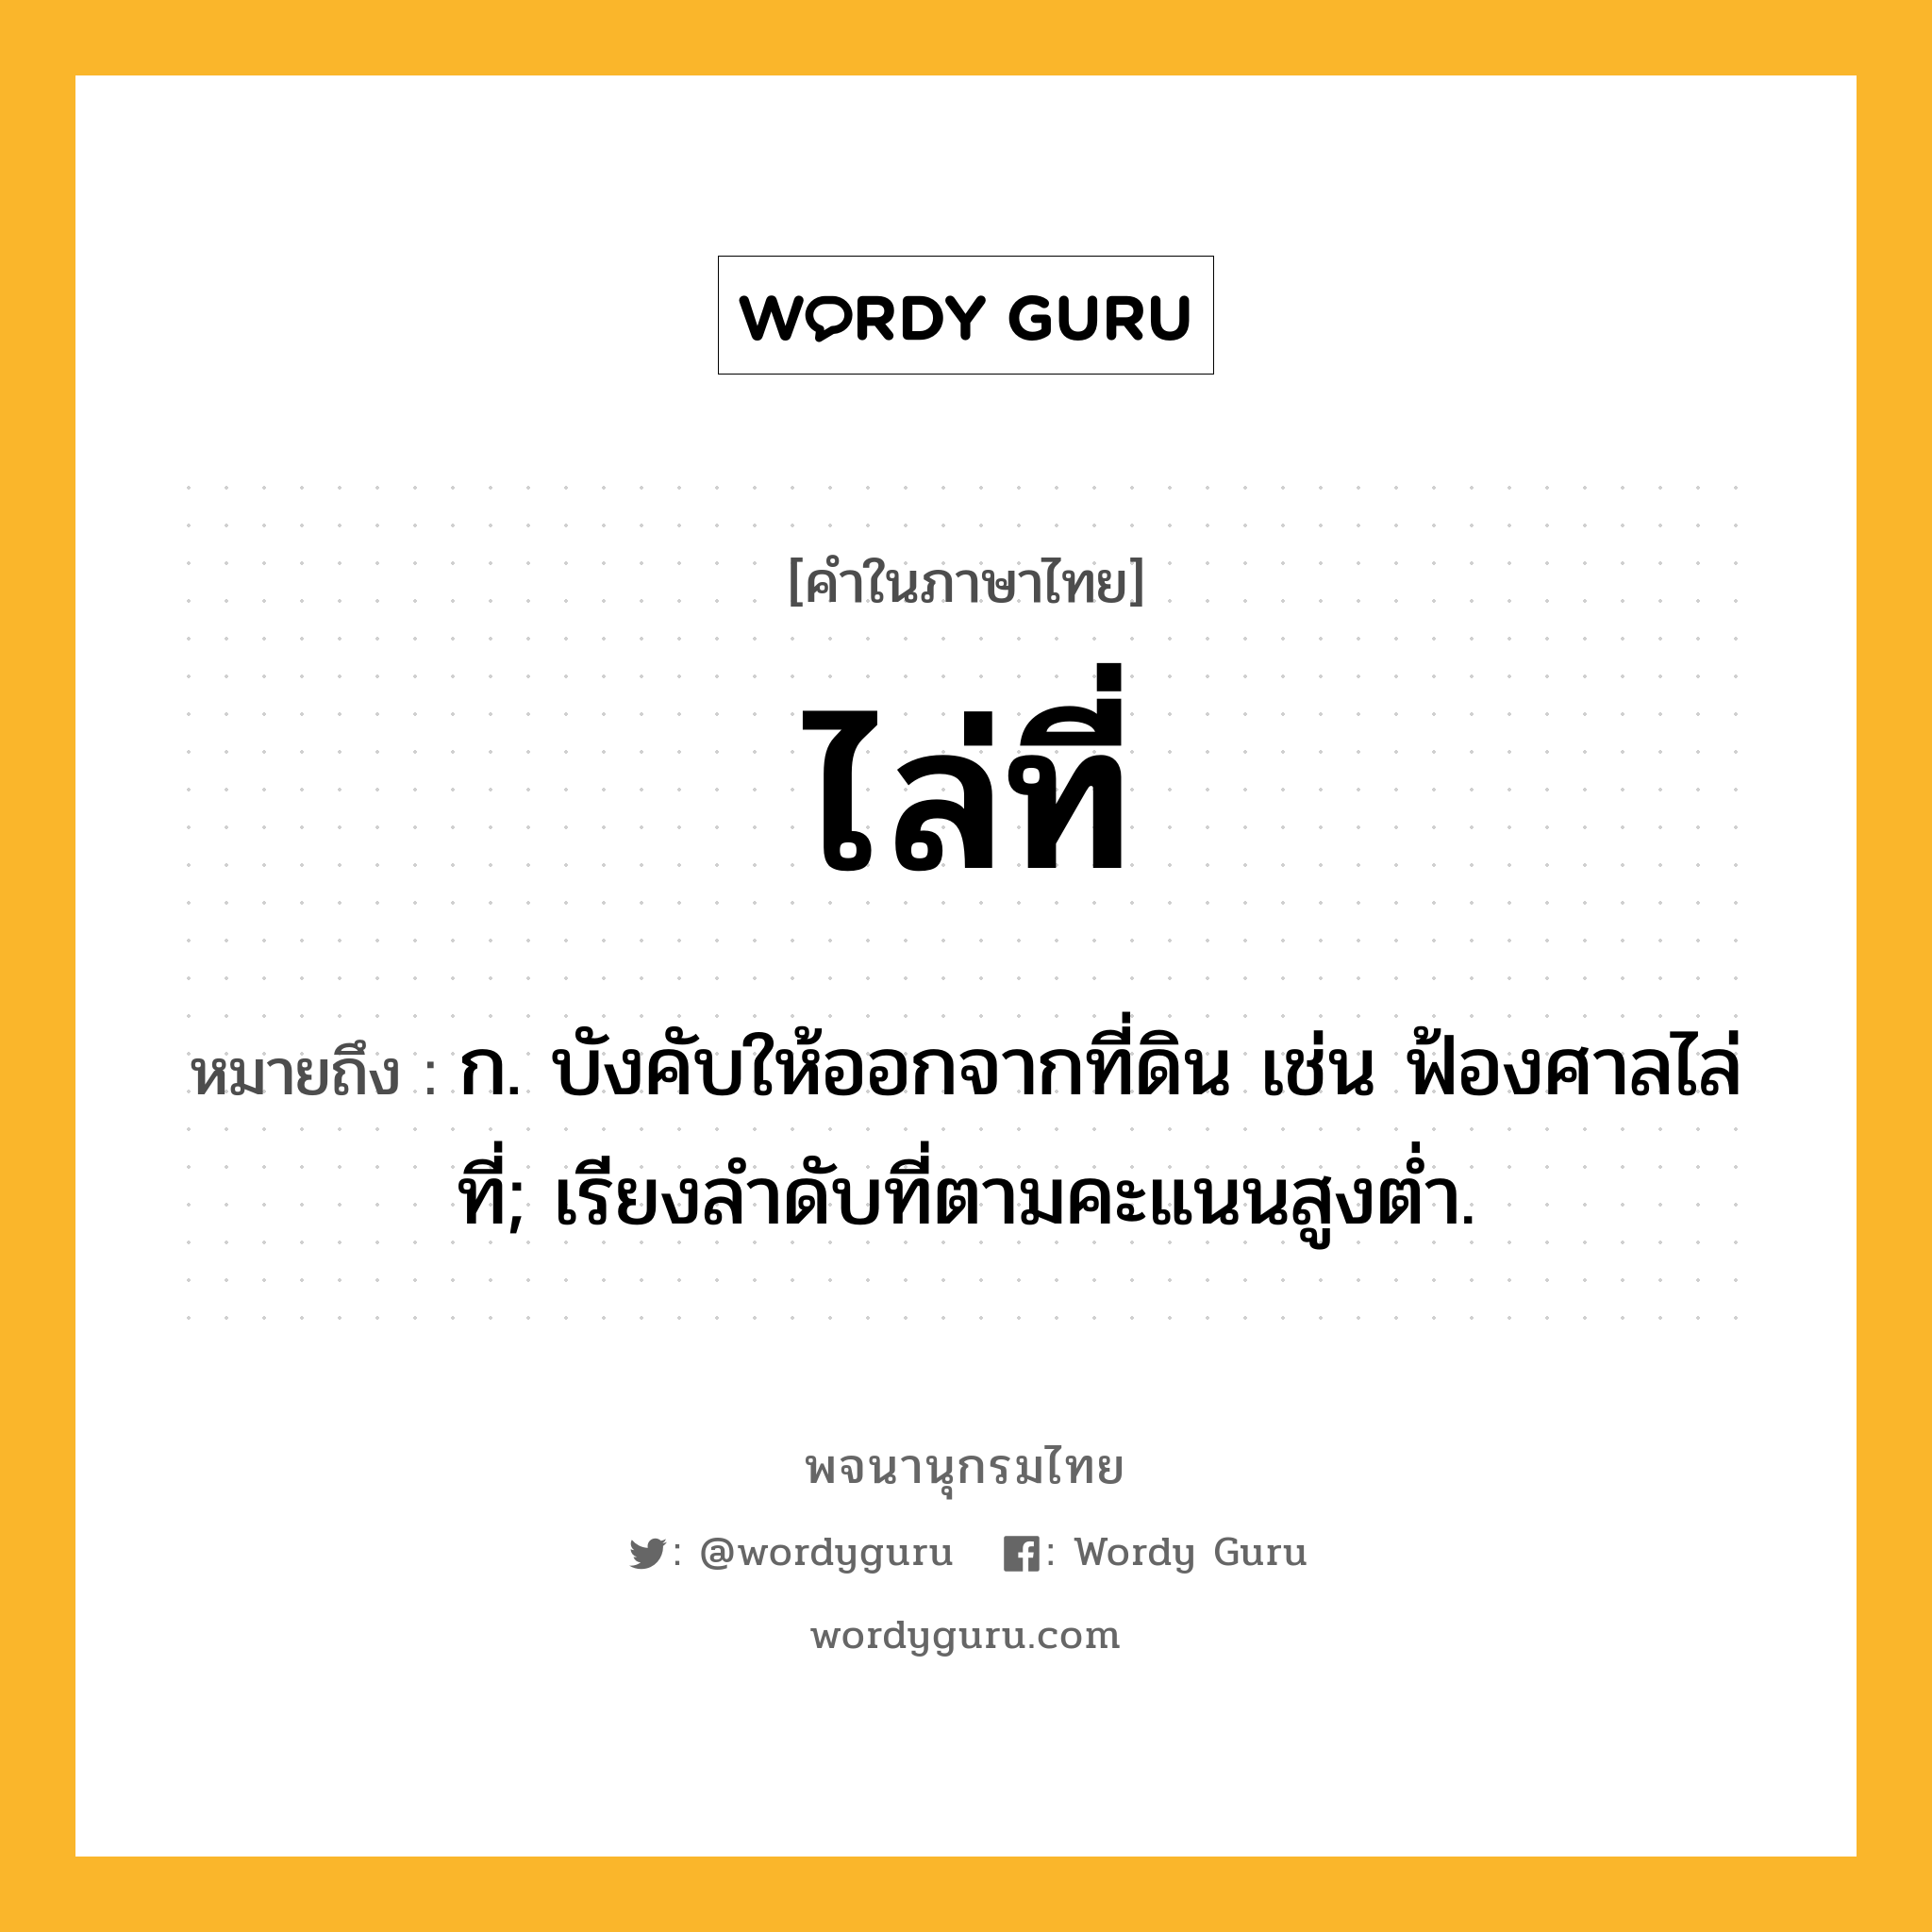 ไล่ที่ ความหมาย หมายถึงอะไร?, คำในภาษาไทย ไล่ที่ หมายถึง ก. บังคับให้ออกจากที่ดิน เช่น ฟ้องศาลไล่ที่; เรียงลำดับที่ตามคะแนนสูงต่ำ.